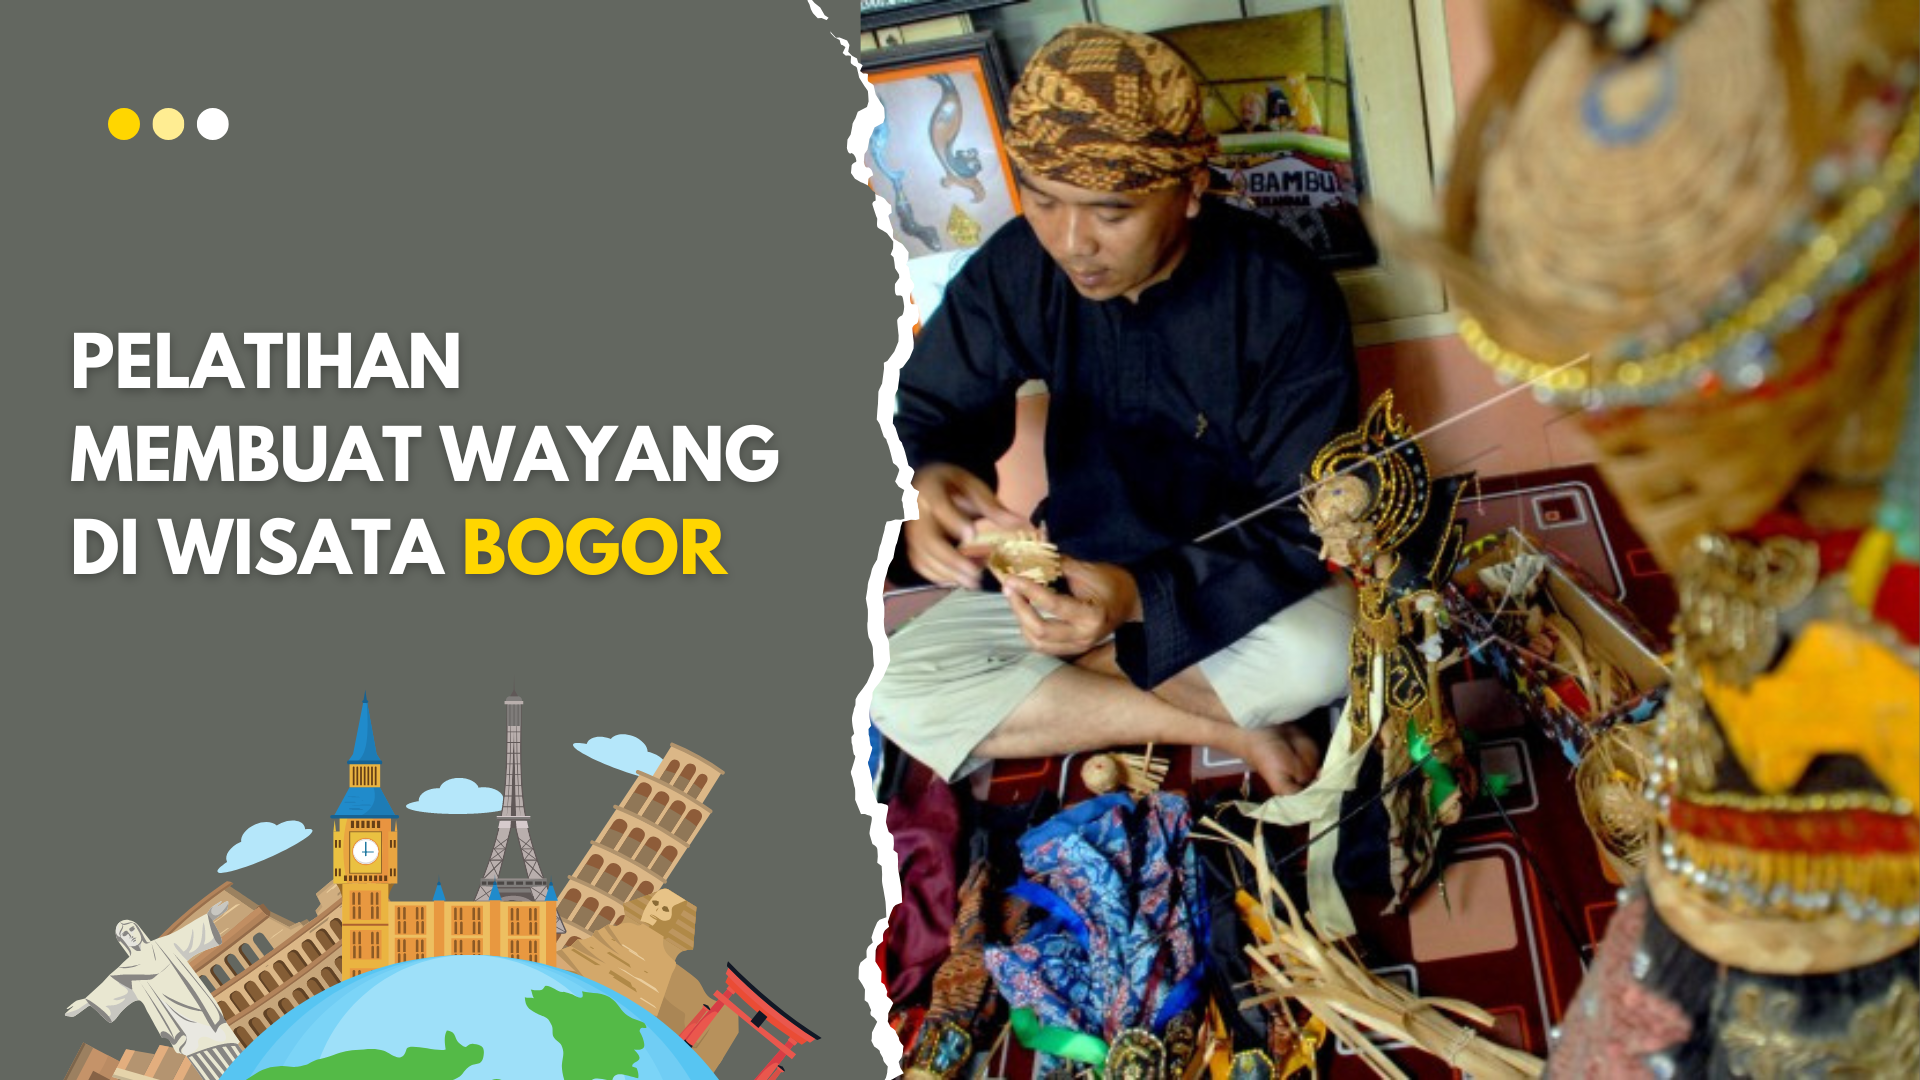 Pelatihan Membuat Wayang di Wisata Bogor